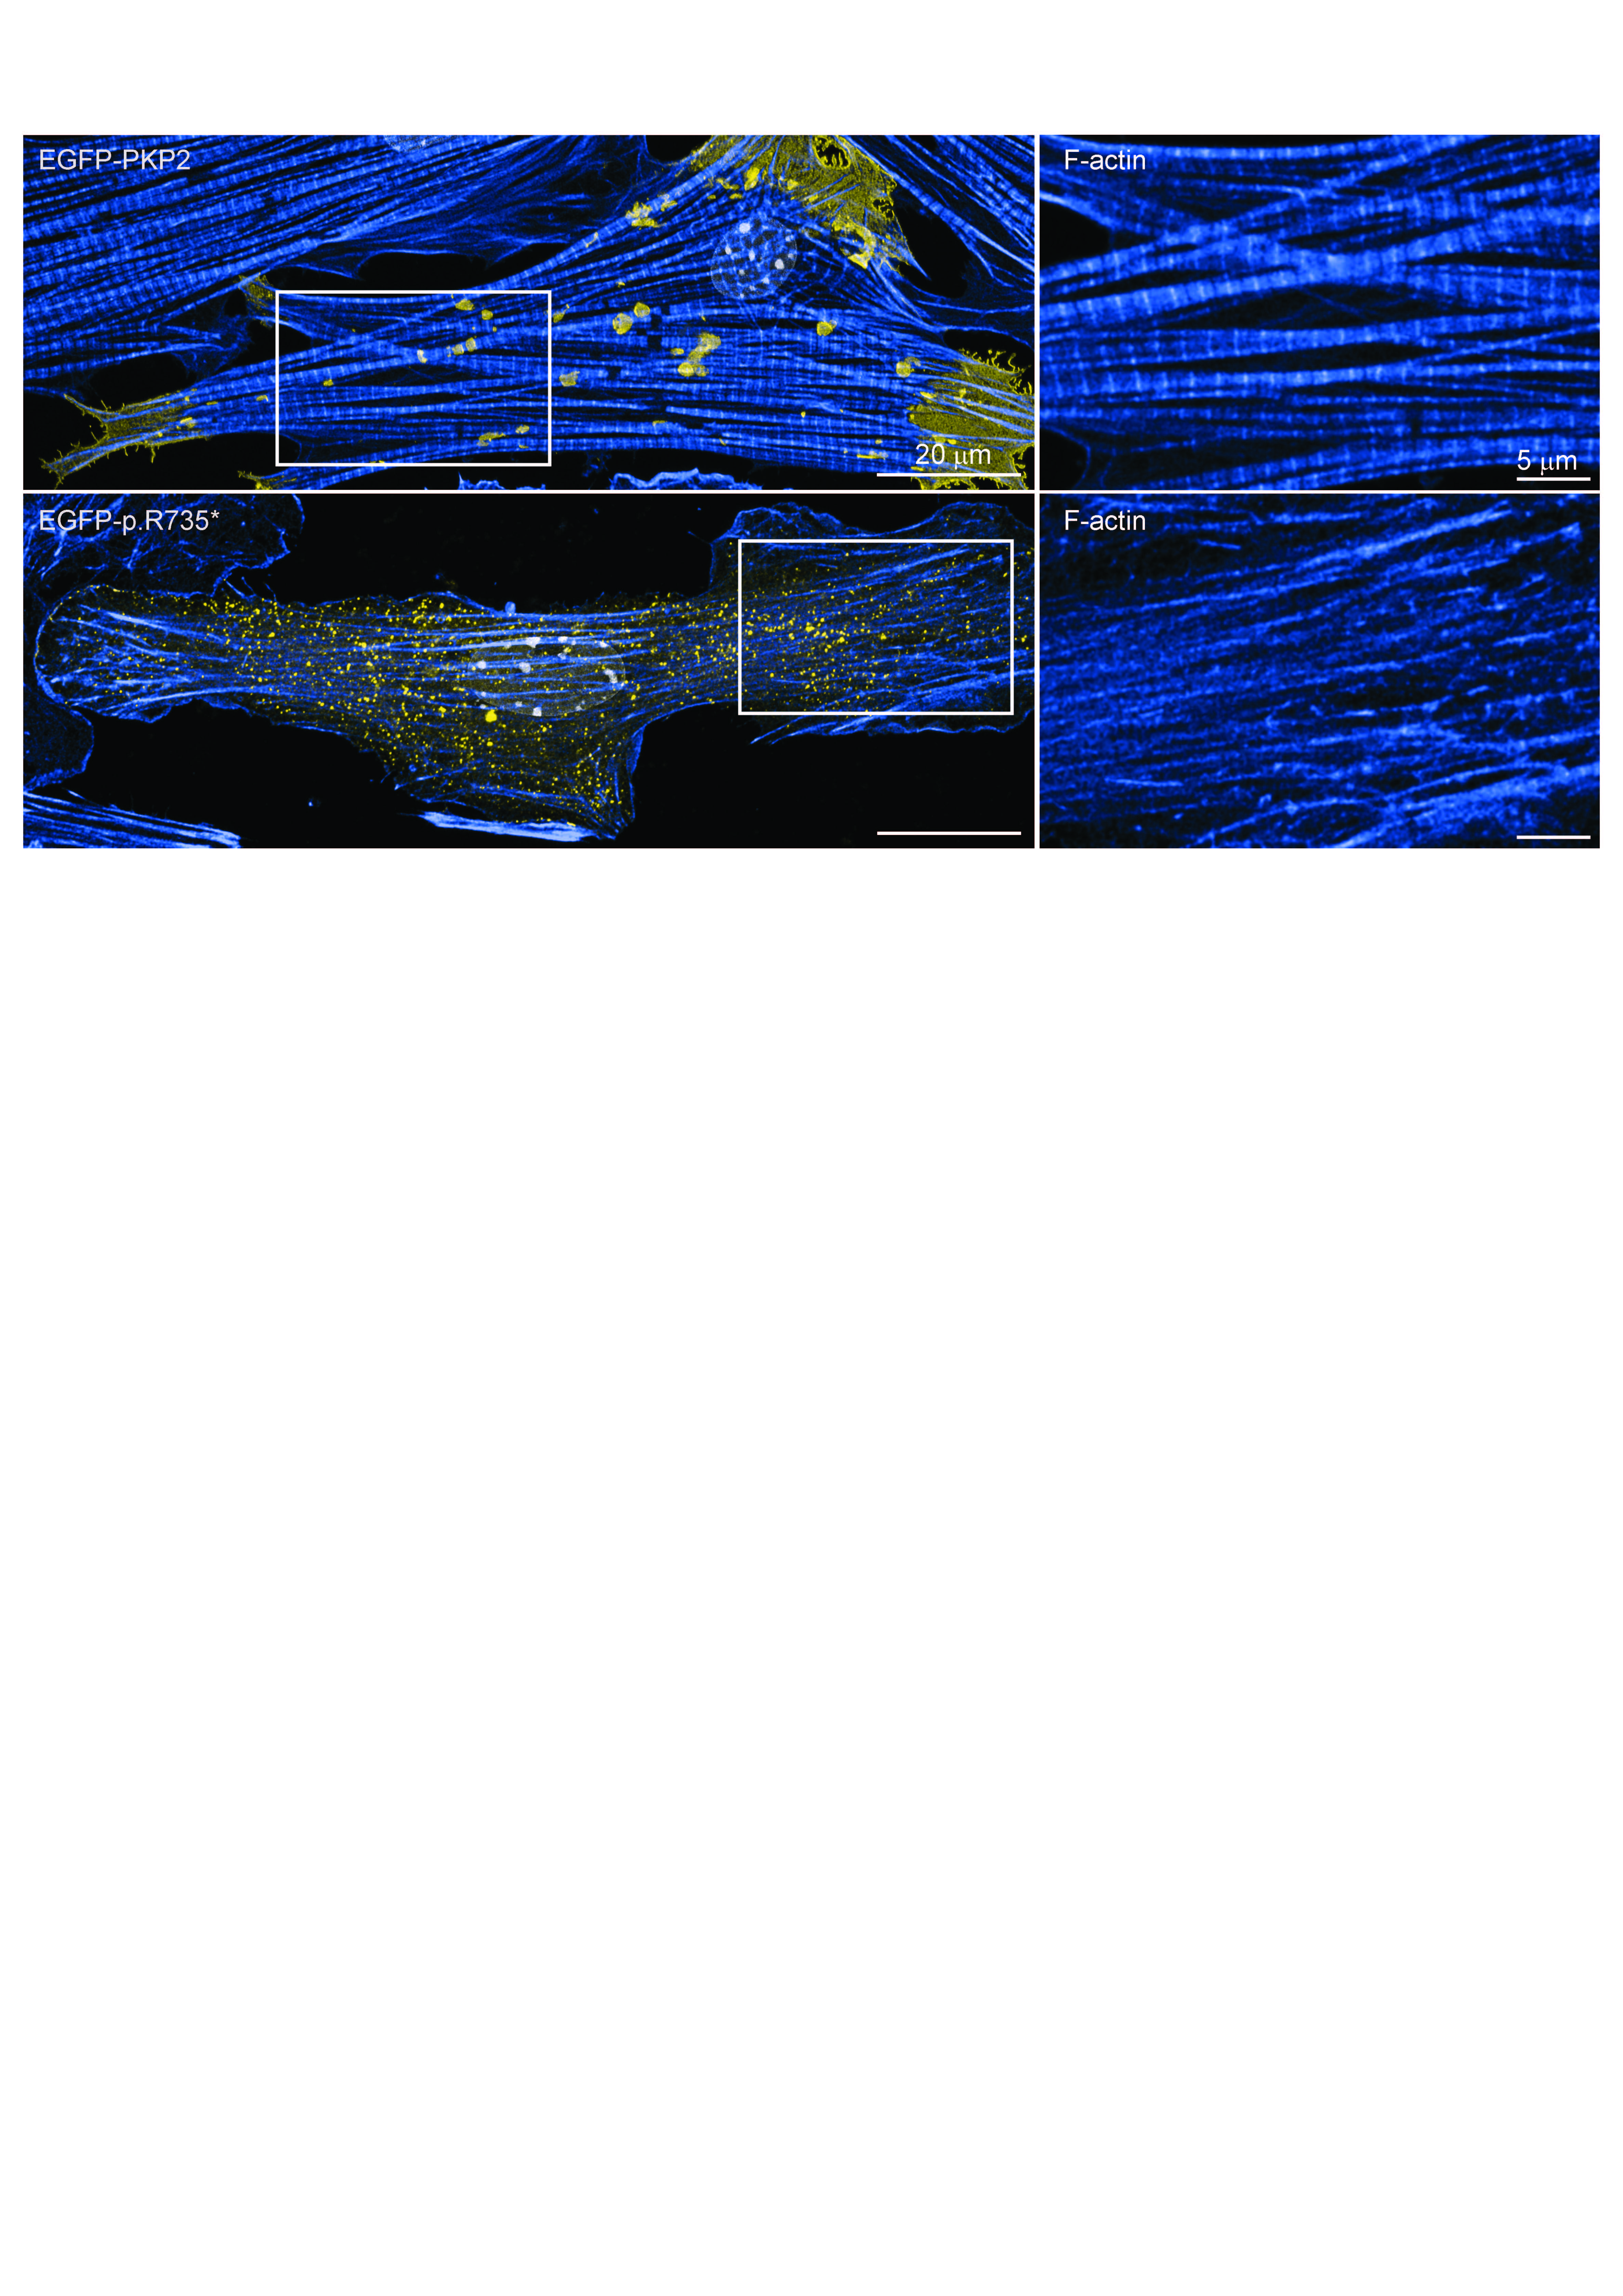 Imágenes de microscopía de células de corazón (cardiomiocitos) que muestran cómo se pierde la estructura de la célula en presencia de la proteína mutada. La imagen superior muestra la estructura ordenada de una célula control (EGFP-PKP2). La imagen inferior muestra la estructura alterada de una célula con la mutación (EGFP-p.R735*). A la derecha se muestra una ampliación de las dos imágenes de la izquierda.